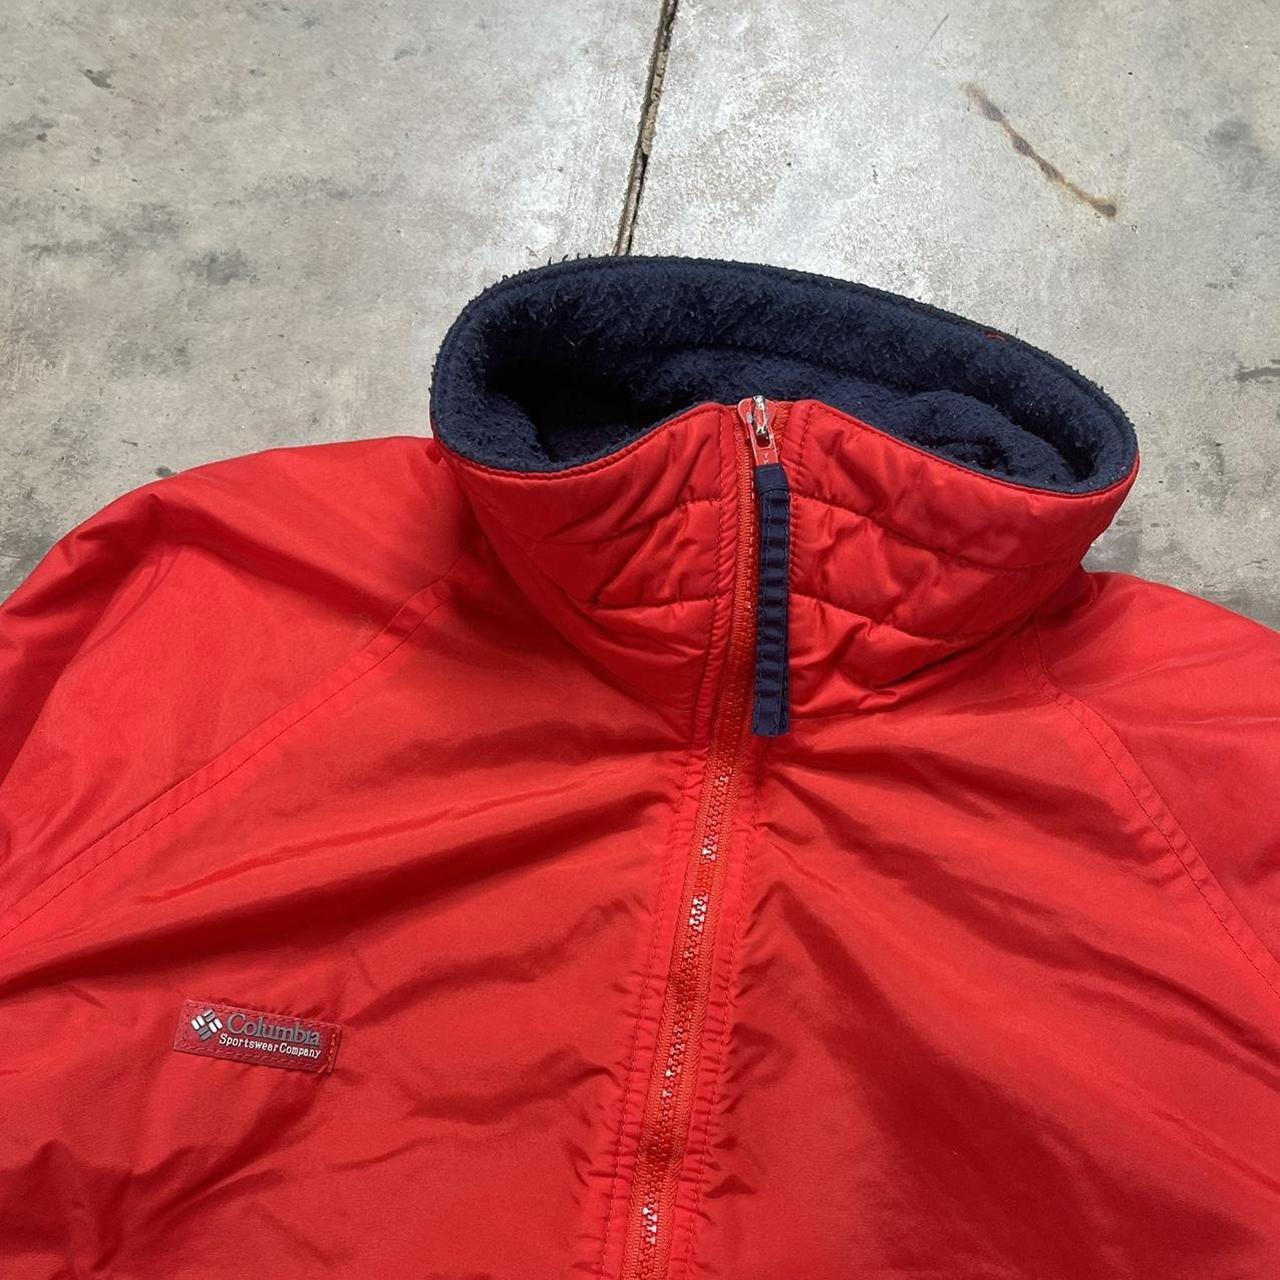 Columbia Sportswear Men's Red Jacket | Depop